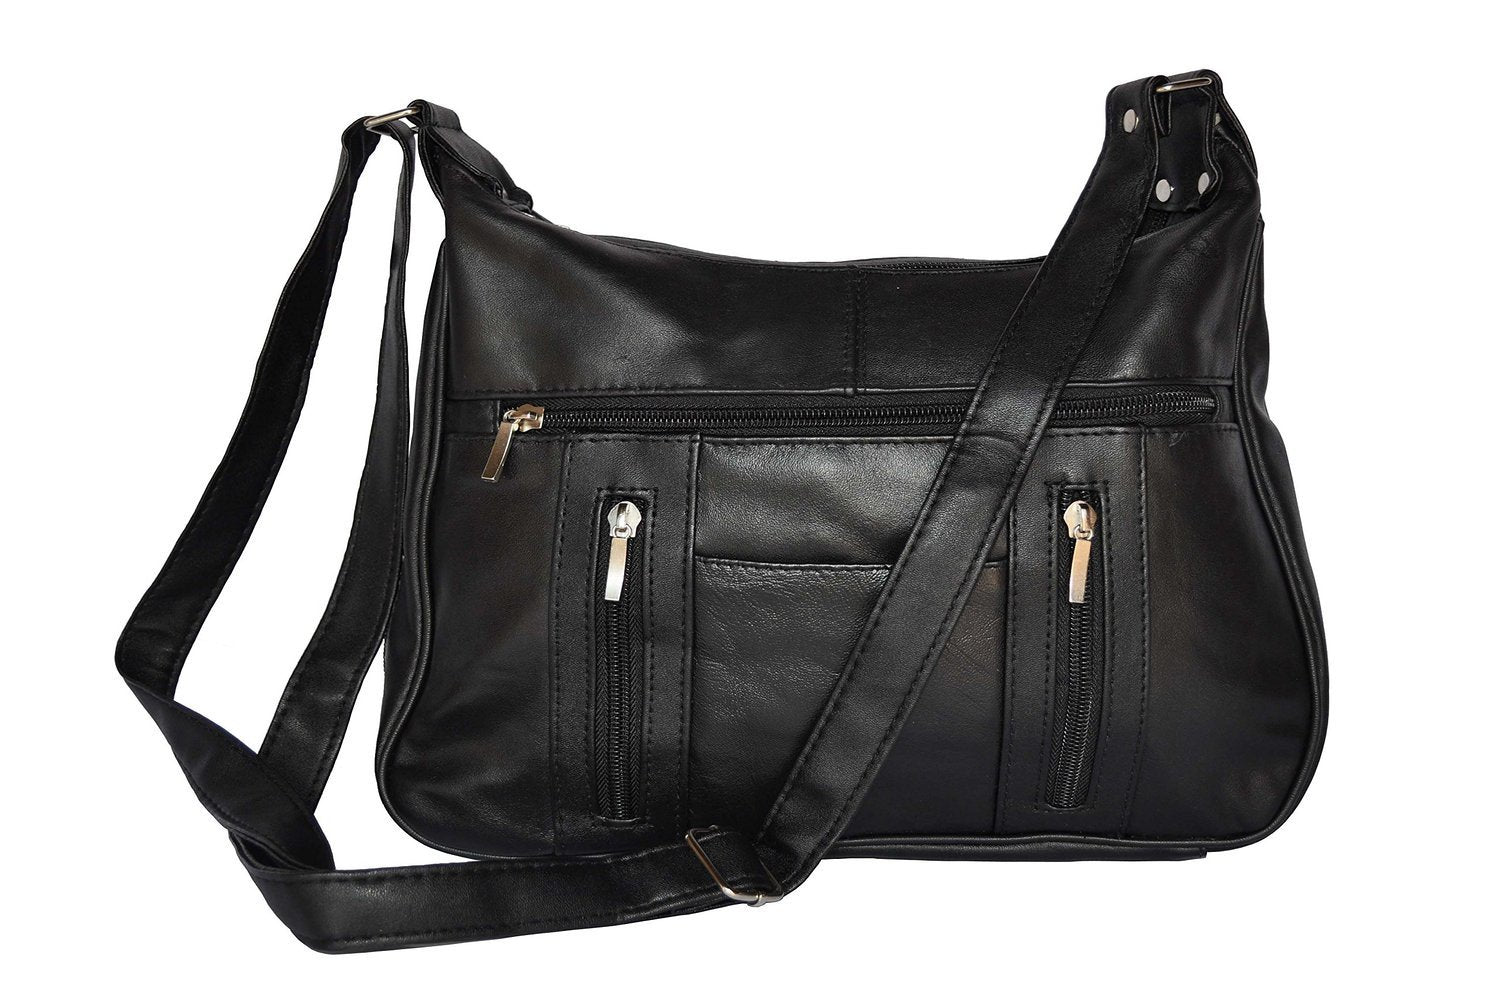 Genuine Black Leather Sling Bag